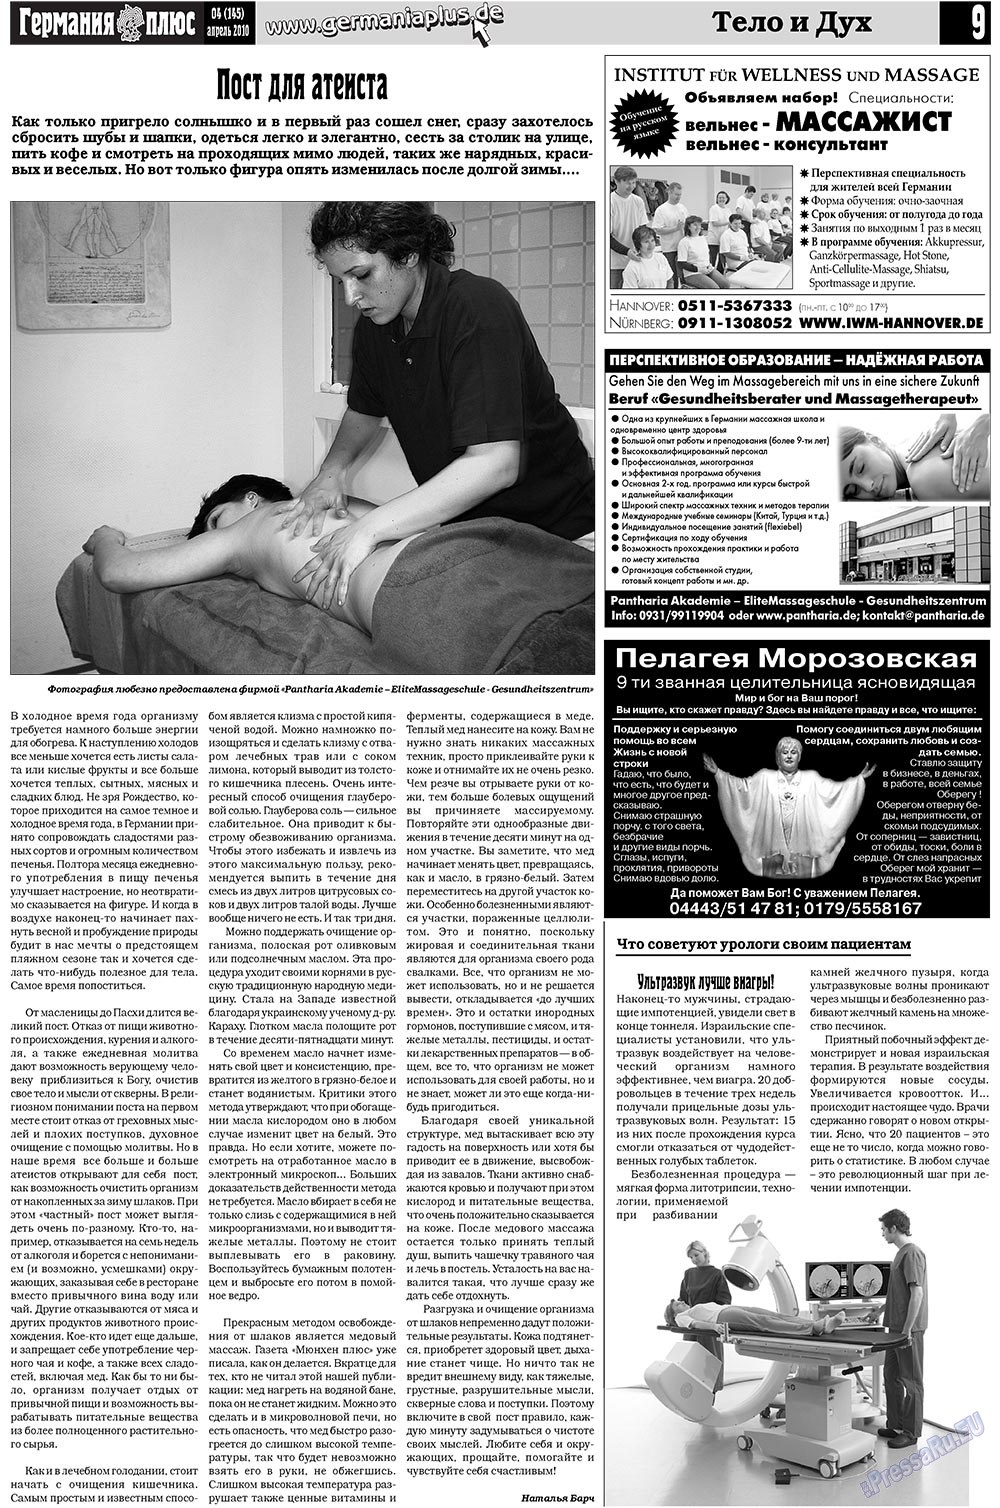 Германия плюс (газета). 2010 год, номер 4, стр. 9